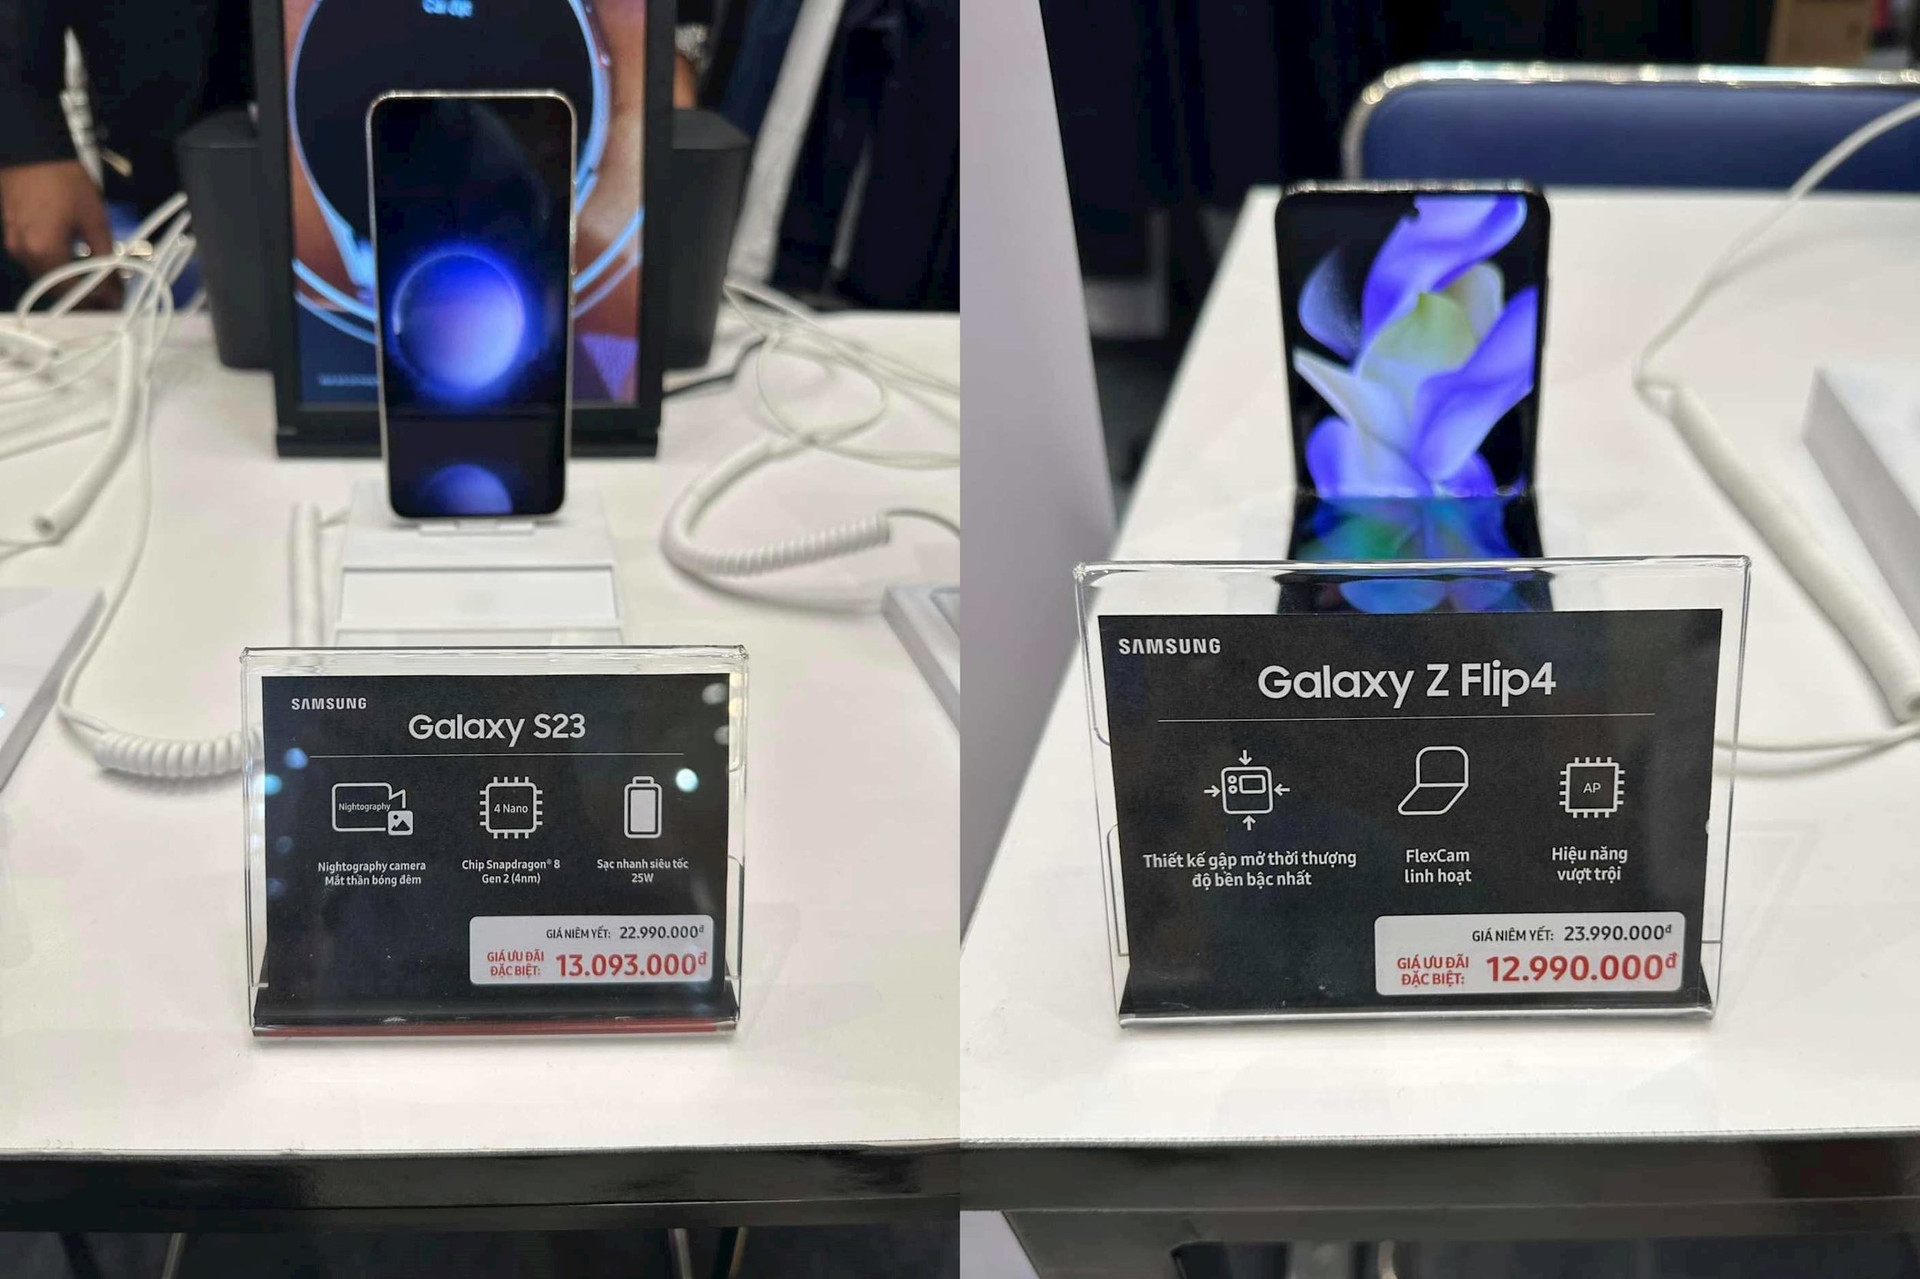 Cuộc chiến giá lên cao trào, đại lý bất chấp xả hàng: Giảm 10 triệu đồng cho Galaxy S23, iPhone 14 Pro Max - Ảnh 2.